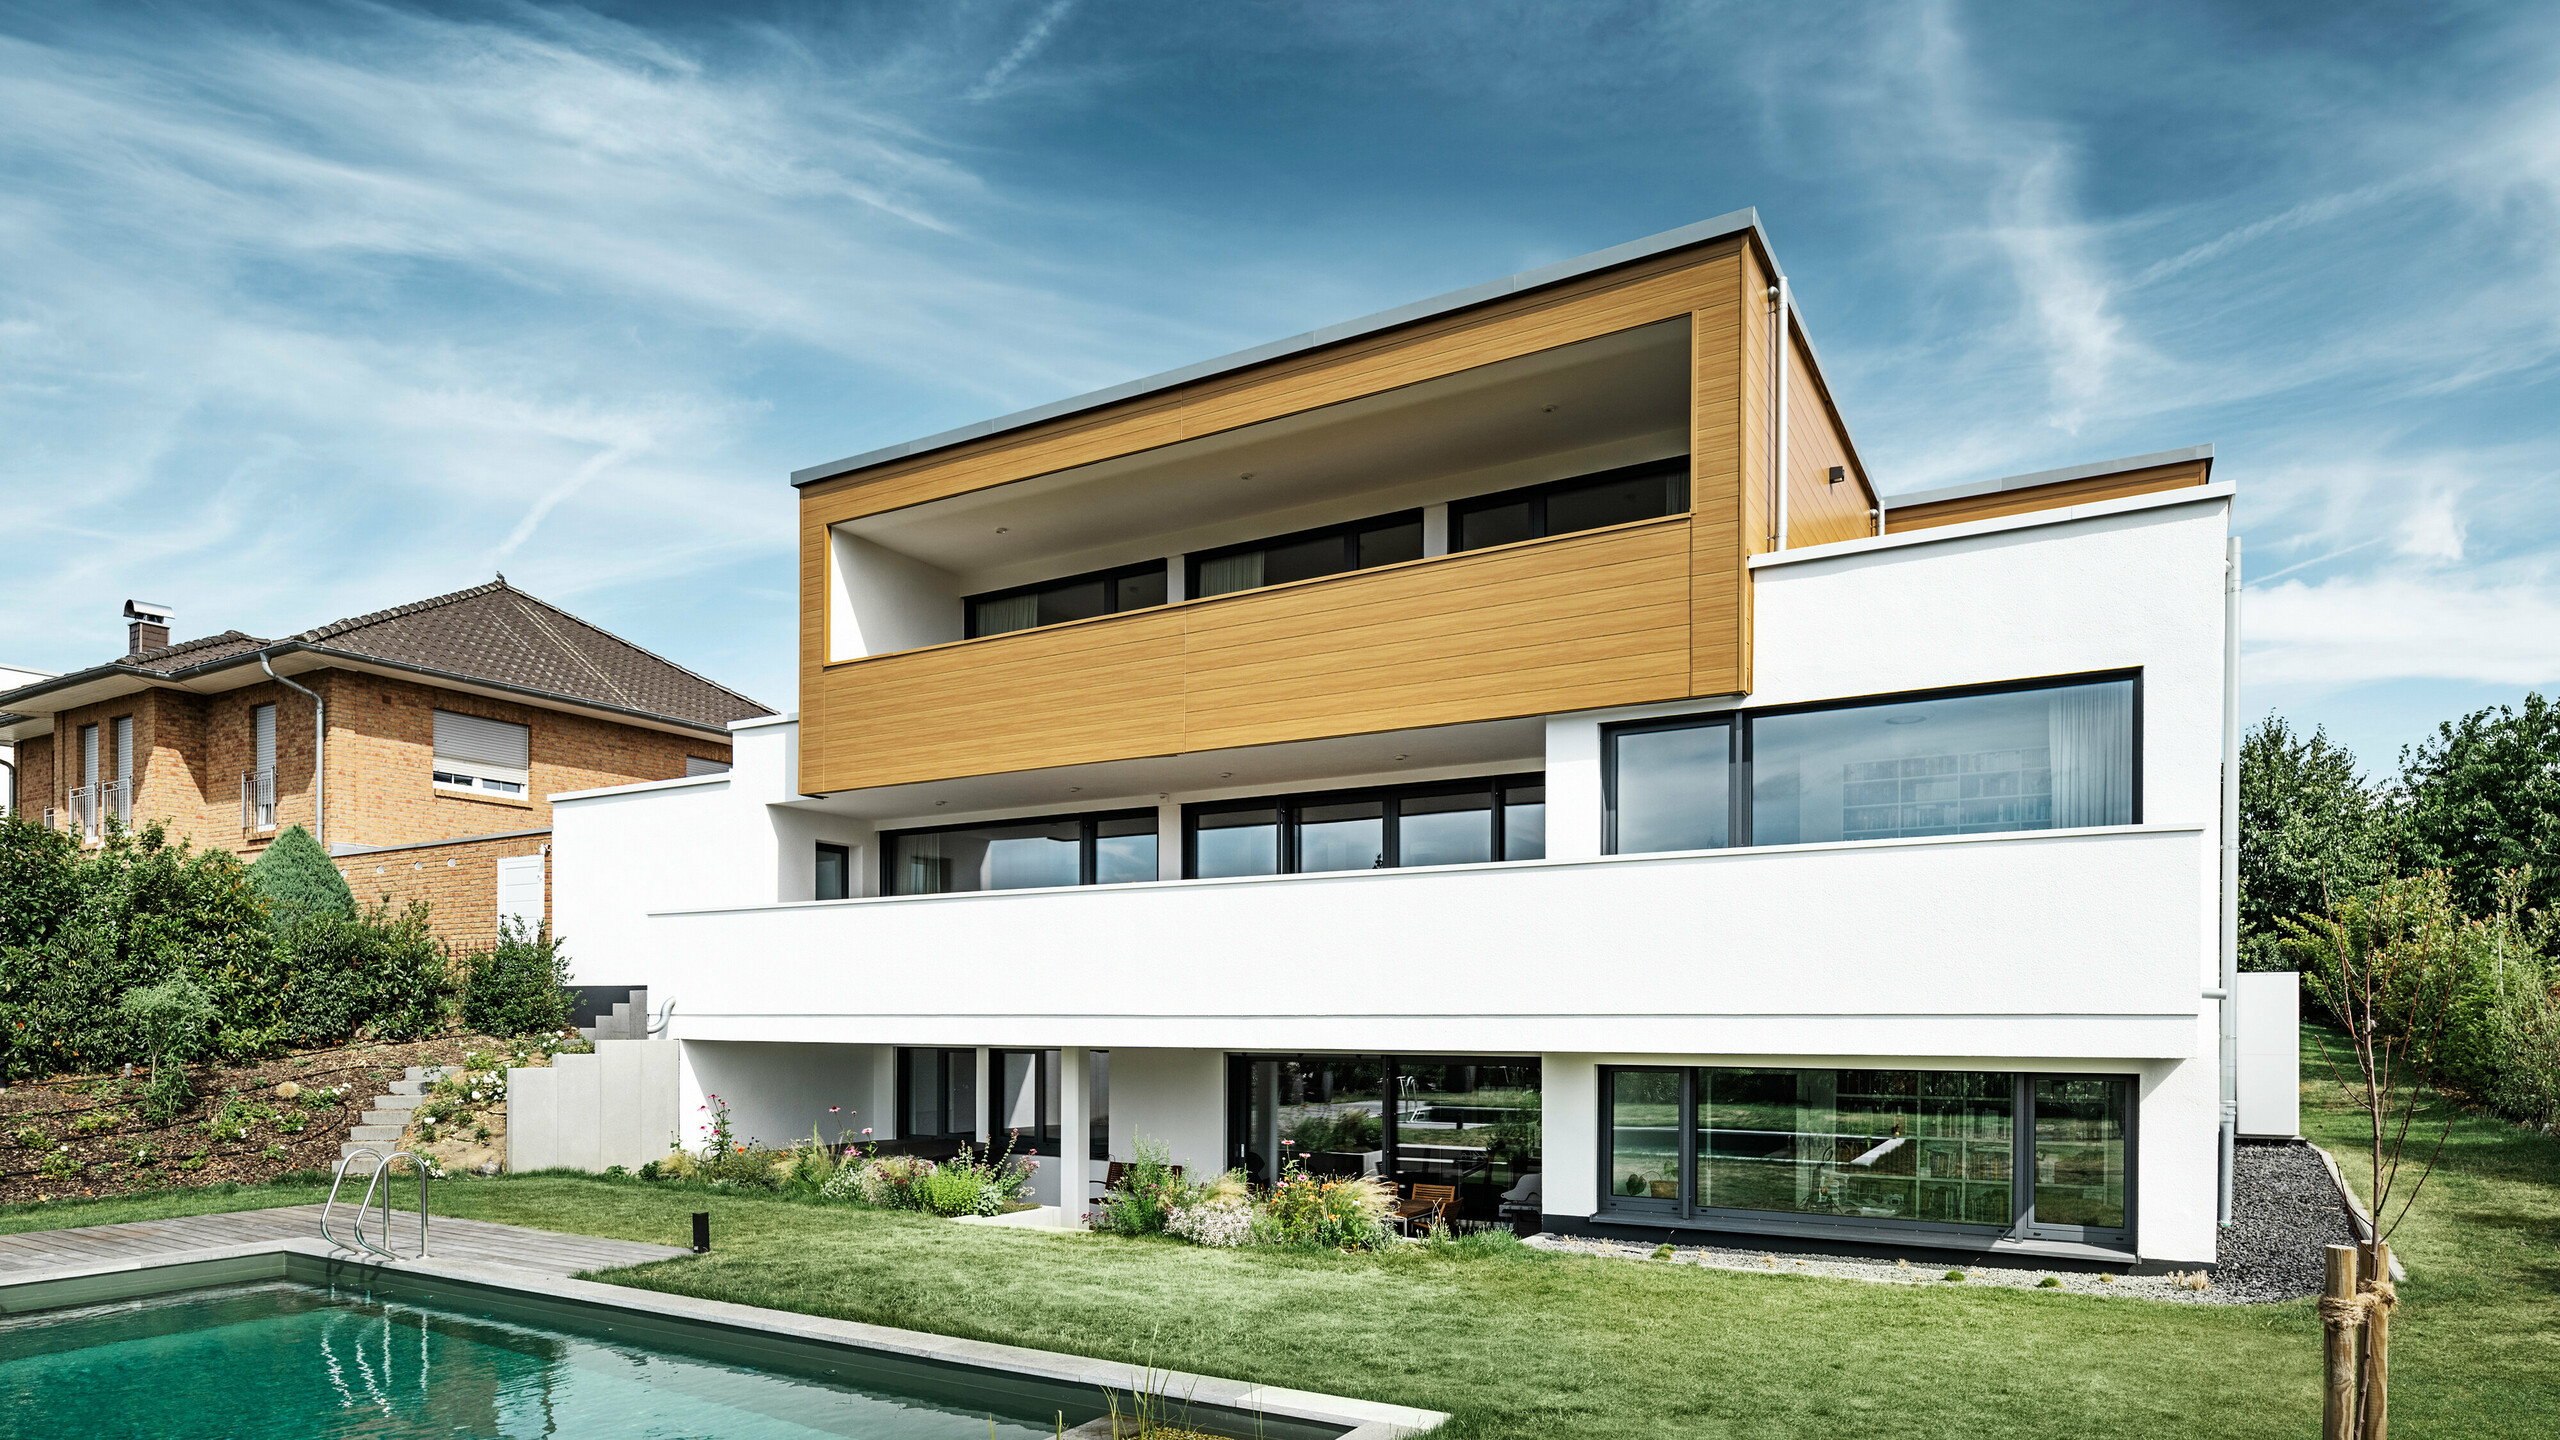 Zadná časť moderného rodinného domu v Usingene, Nemecko. V dolnej časti obrázka je vidieť zelený trávnik, bazén a mladý záhradný strom. Pútavý dom má biely základ budovy z omietnutej fasády, hliníkovú fasádu na hornom poschodí z PREFA Sidings v dub prírodný farbe a veľké okenné plochy s rámom v antracitovej farbe. Z diaľky je na ľavom okraji obrázka vidieť susedný dom s tehlovou fasádou.